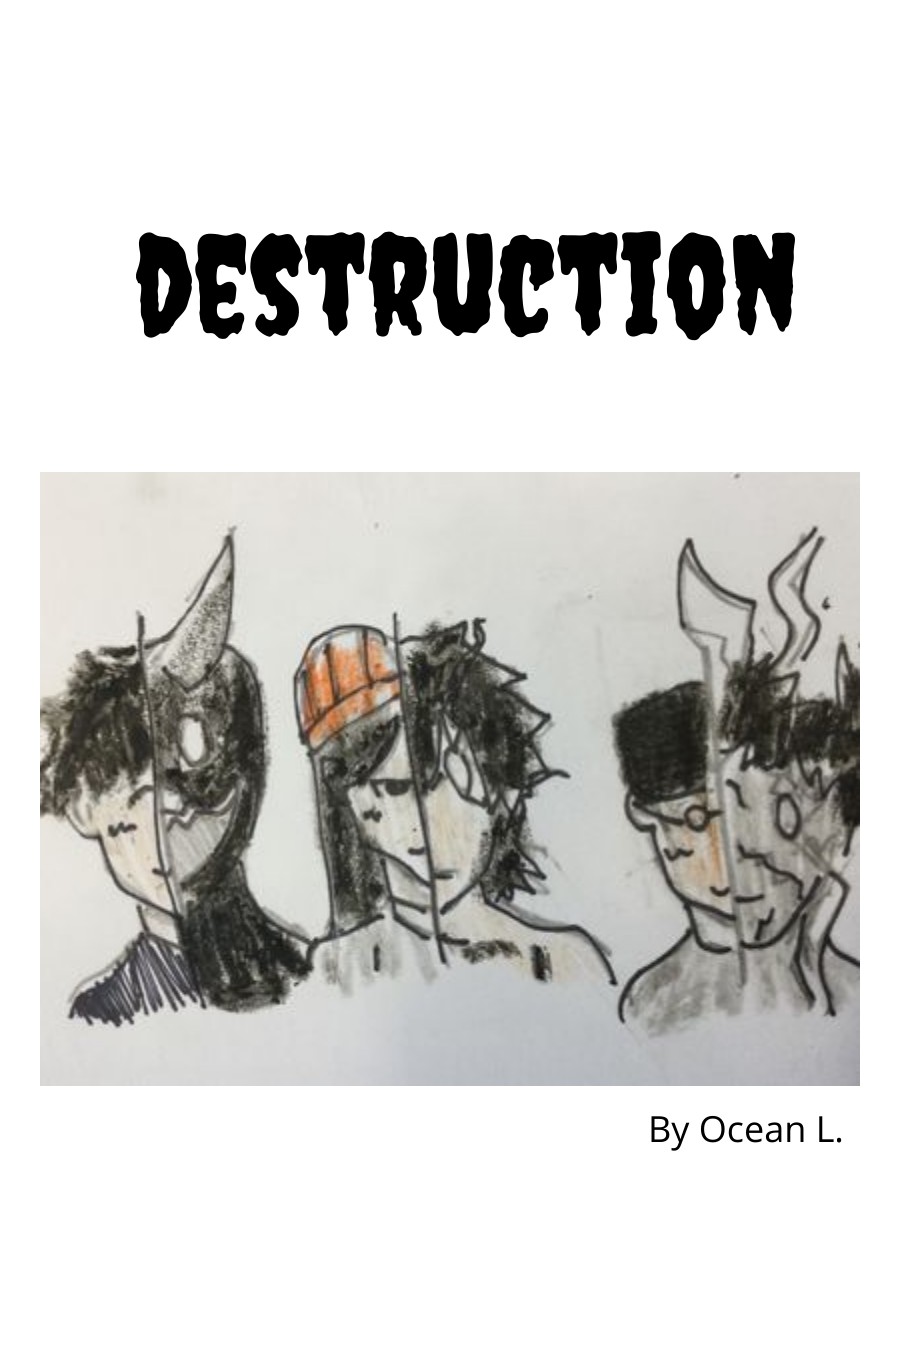 DESTRUCTION by Ocean L